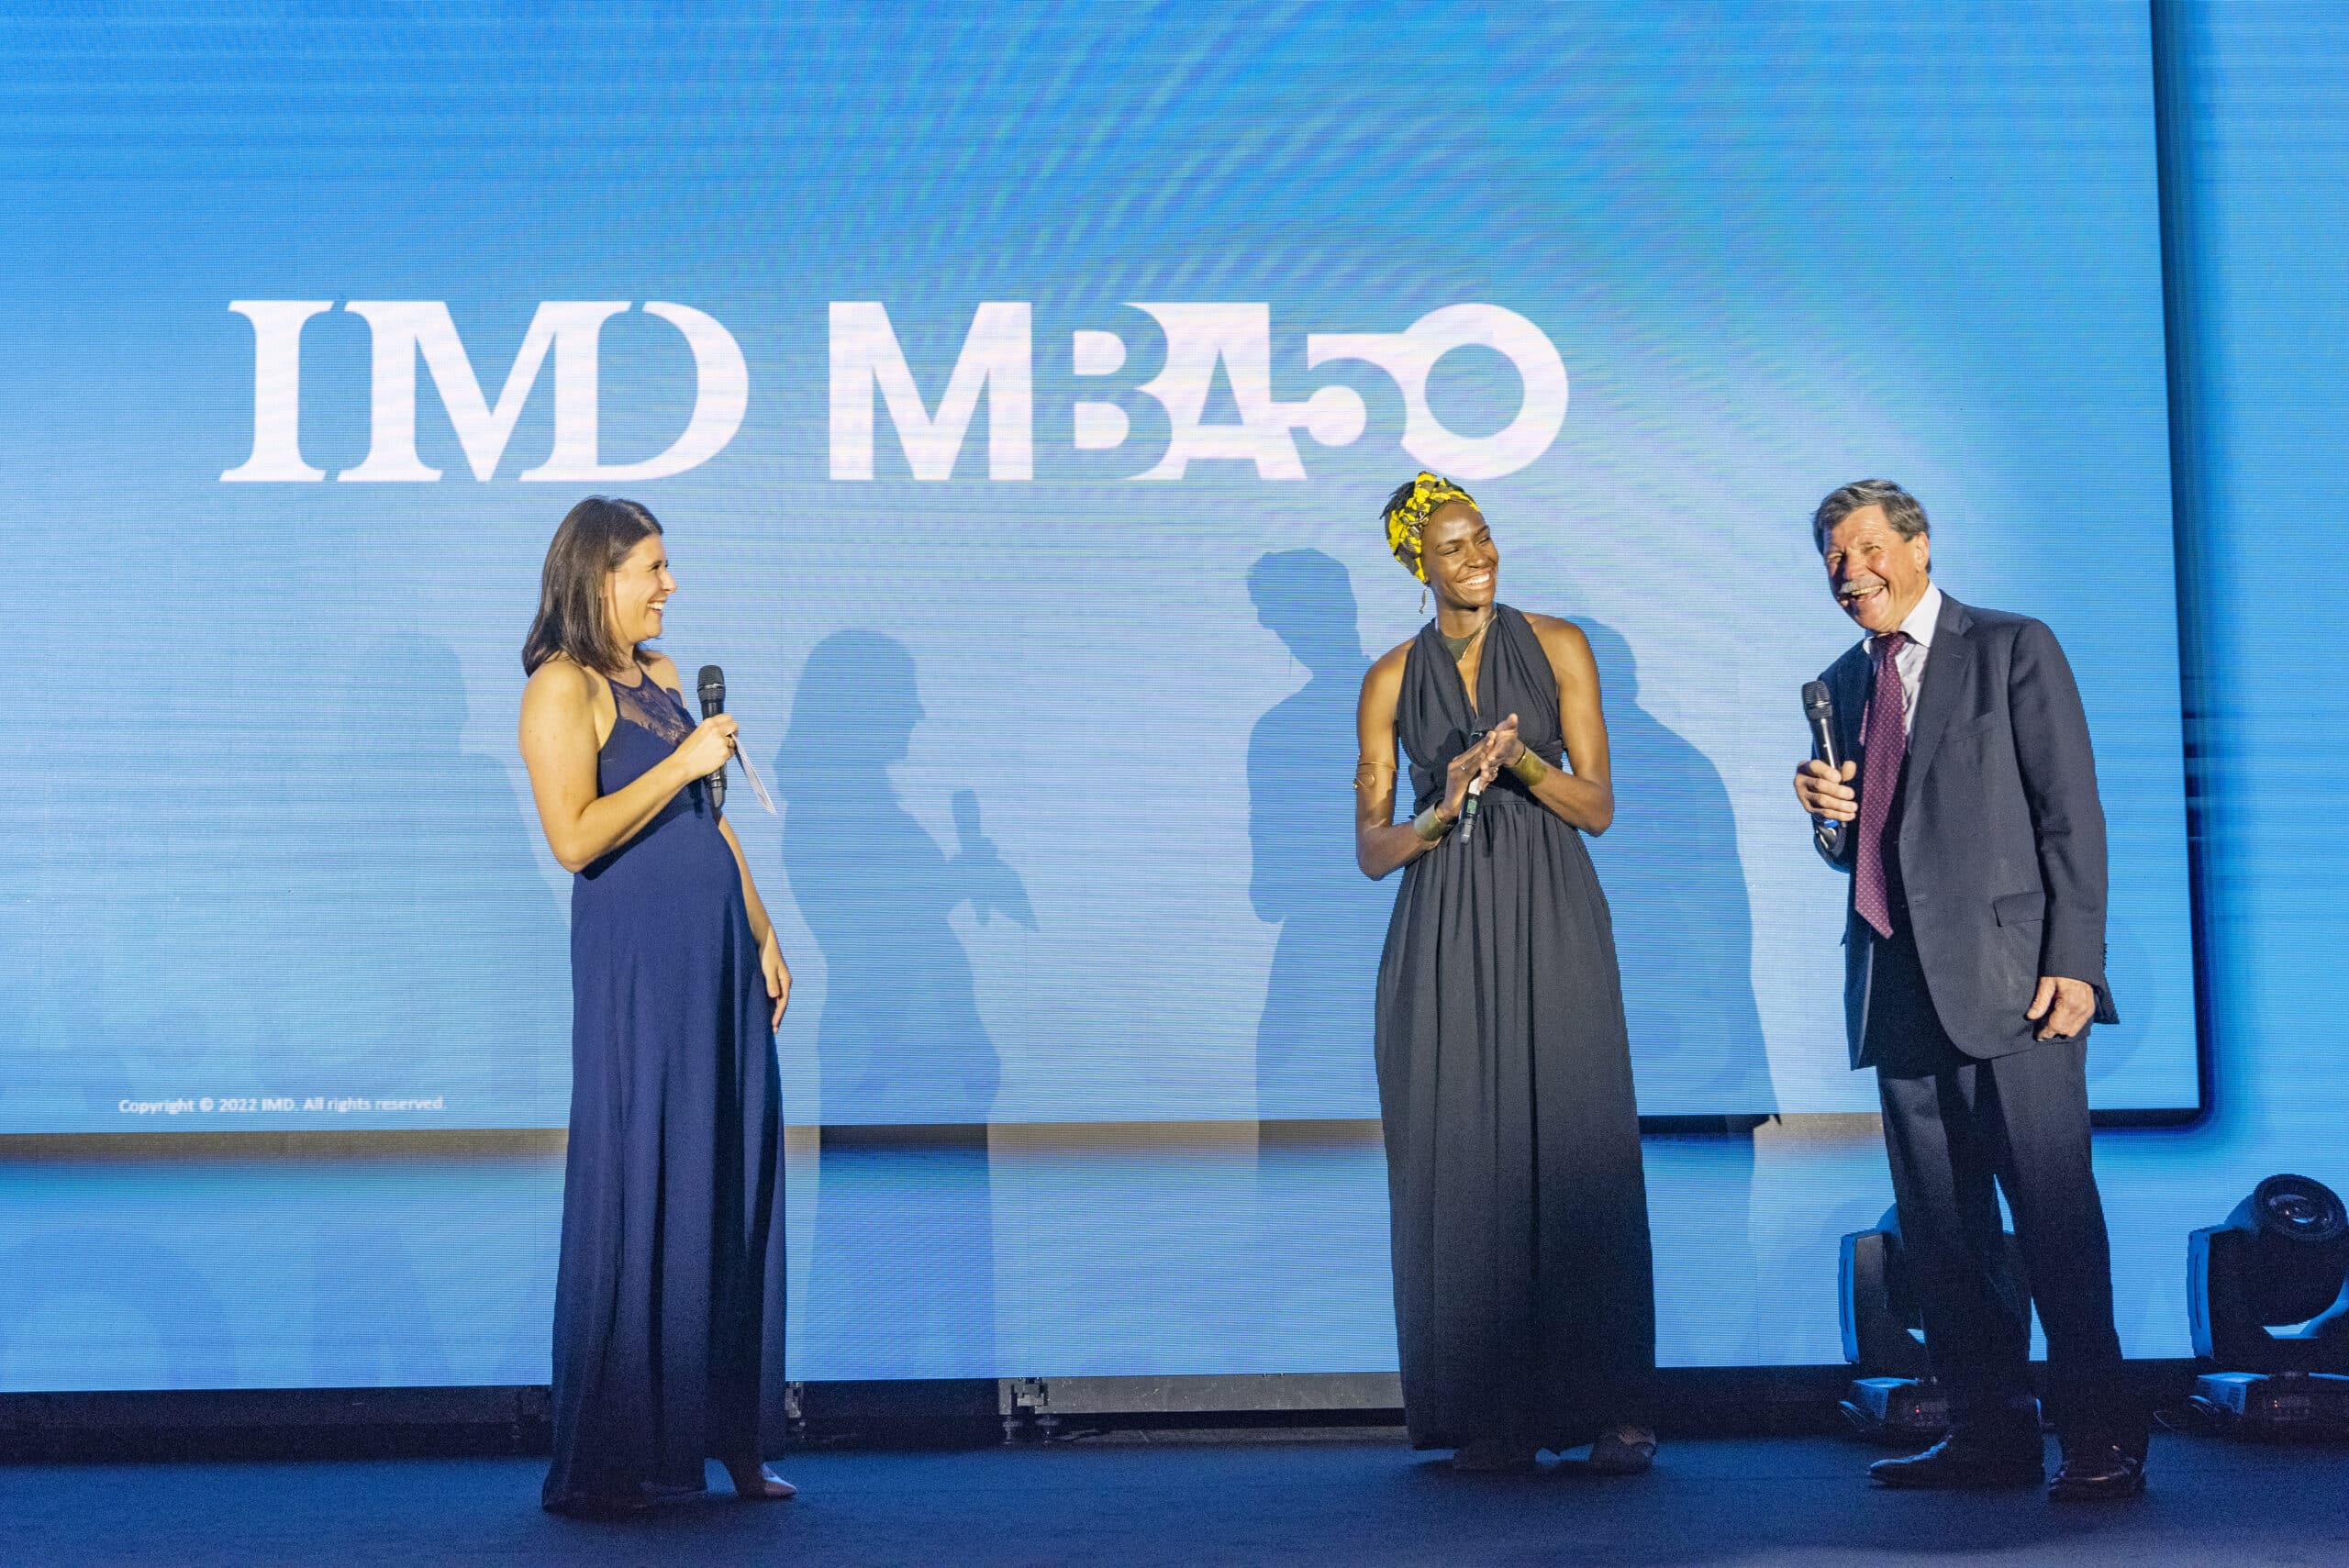 "We are so proud": IMD celebrates 50 years of its MBA program